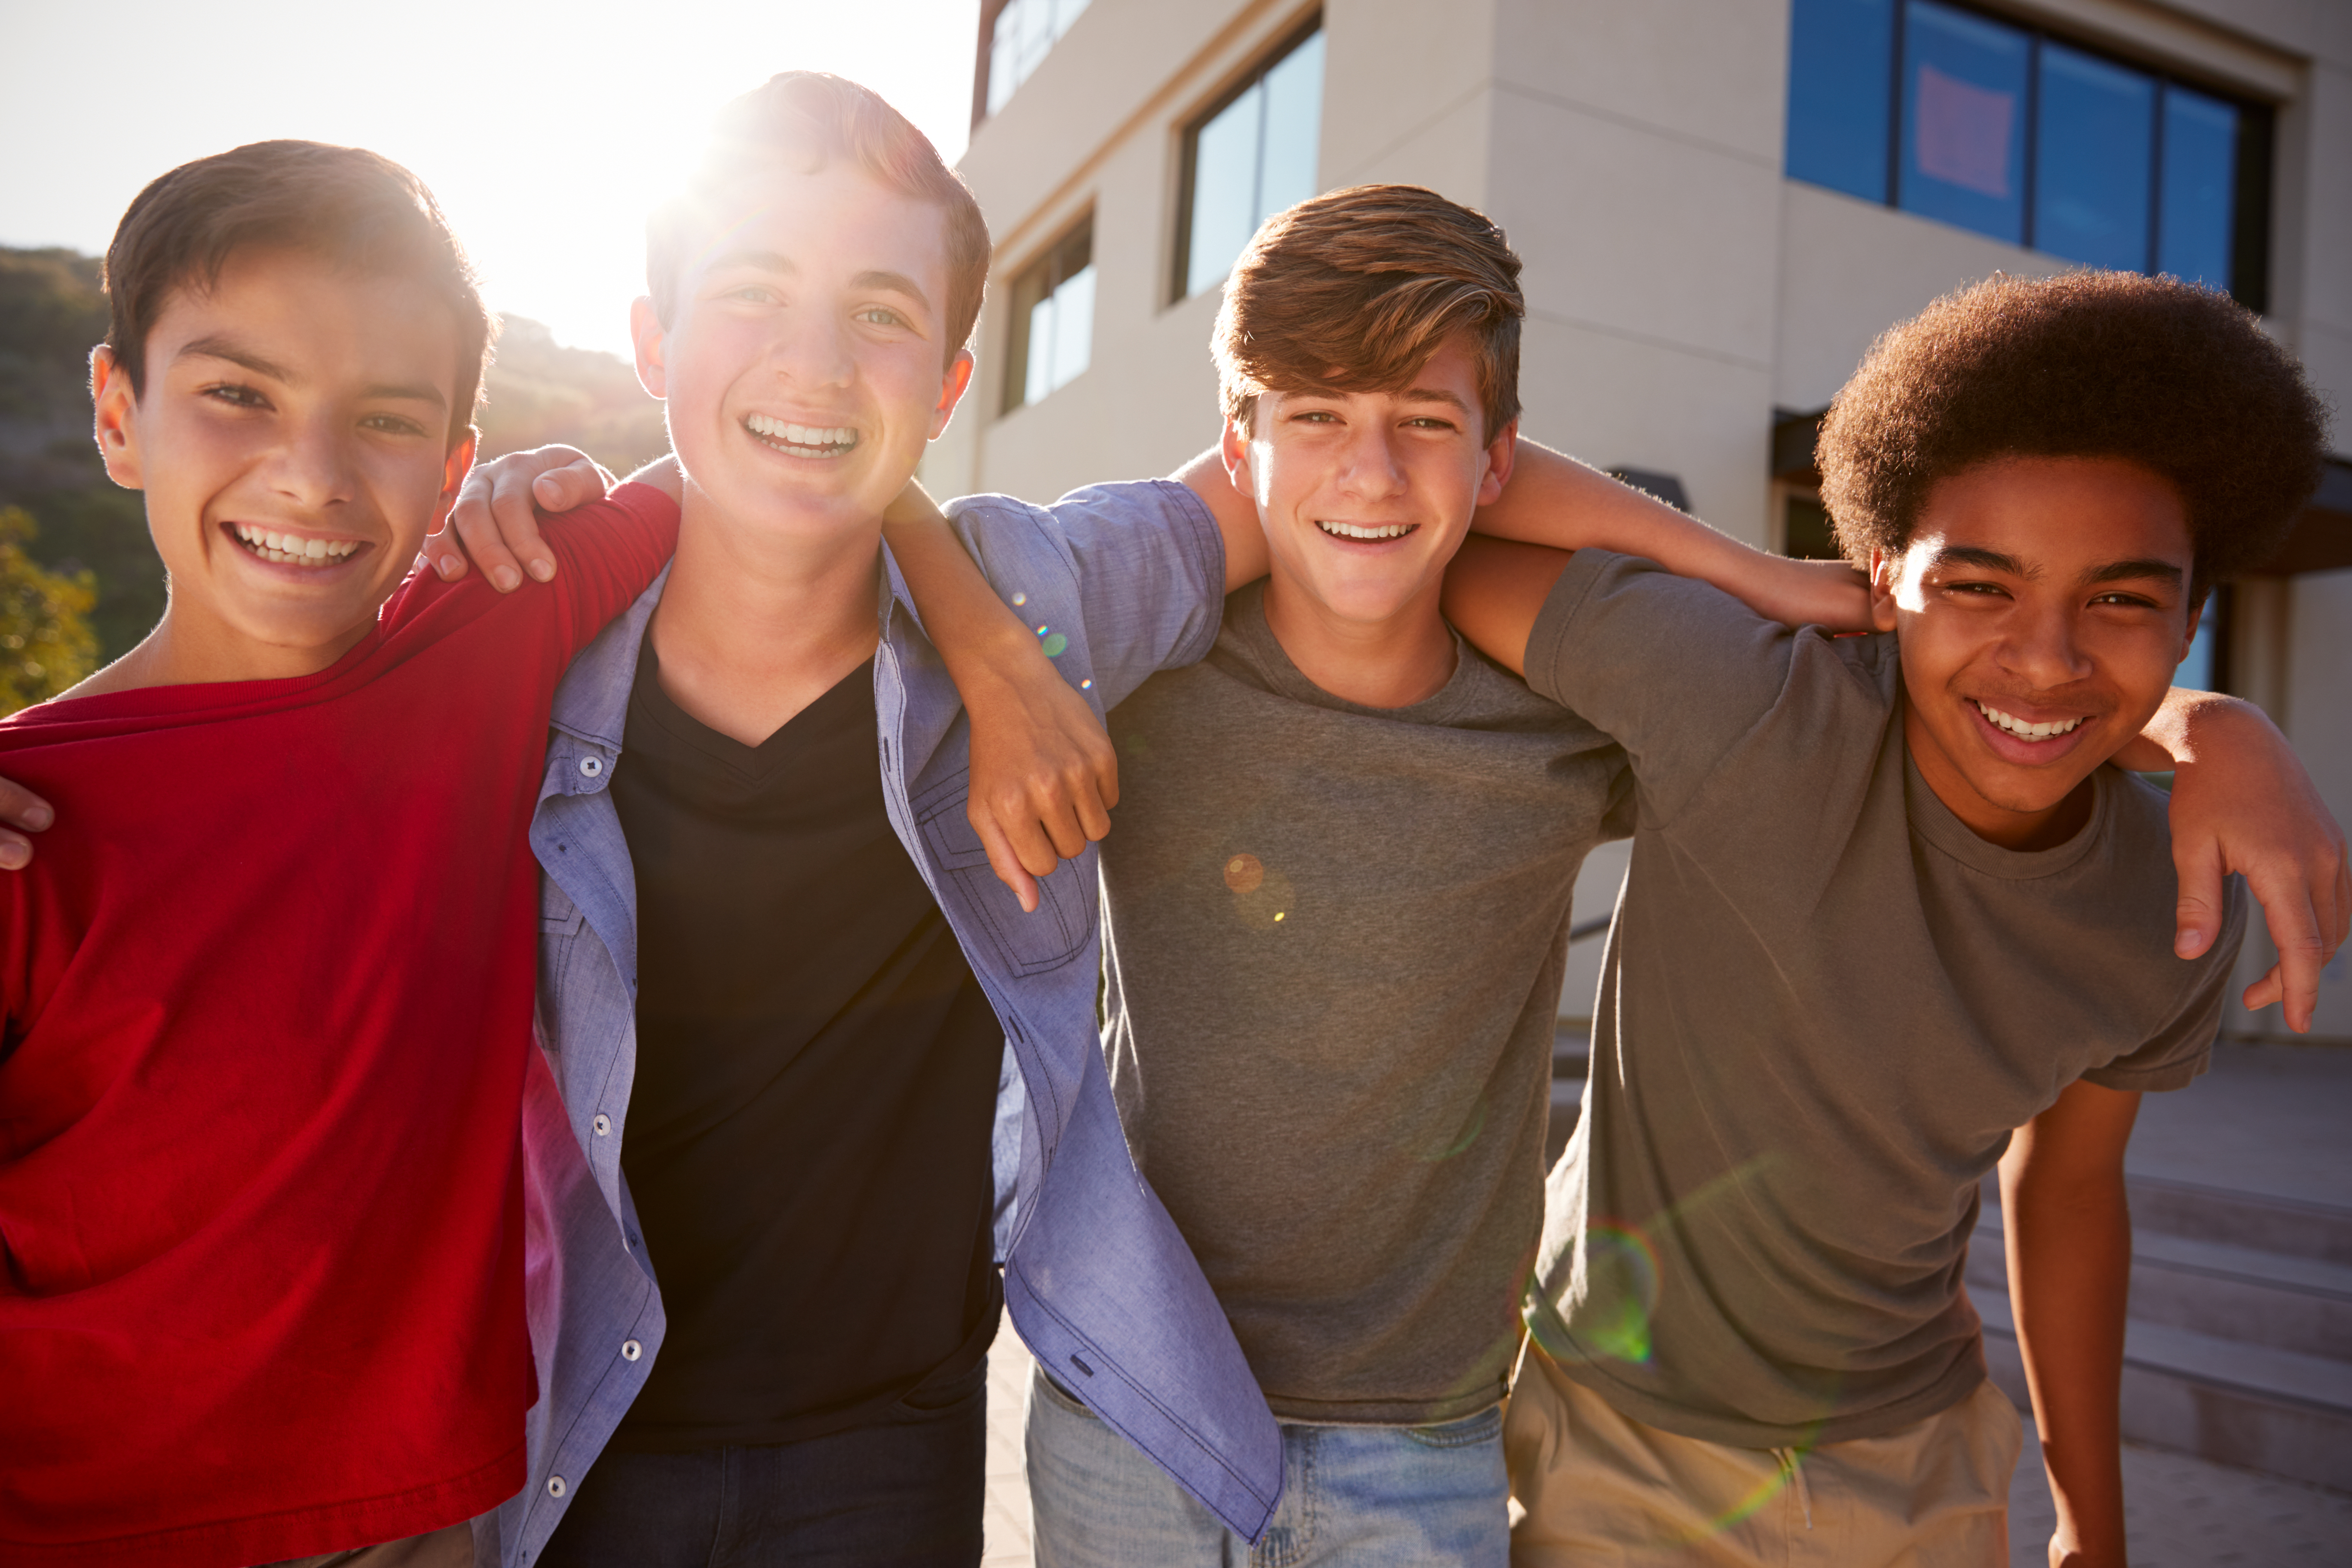 Un groupe de lycéens en train de rire | Source : Shutterstock